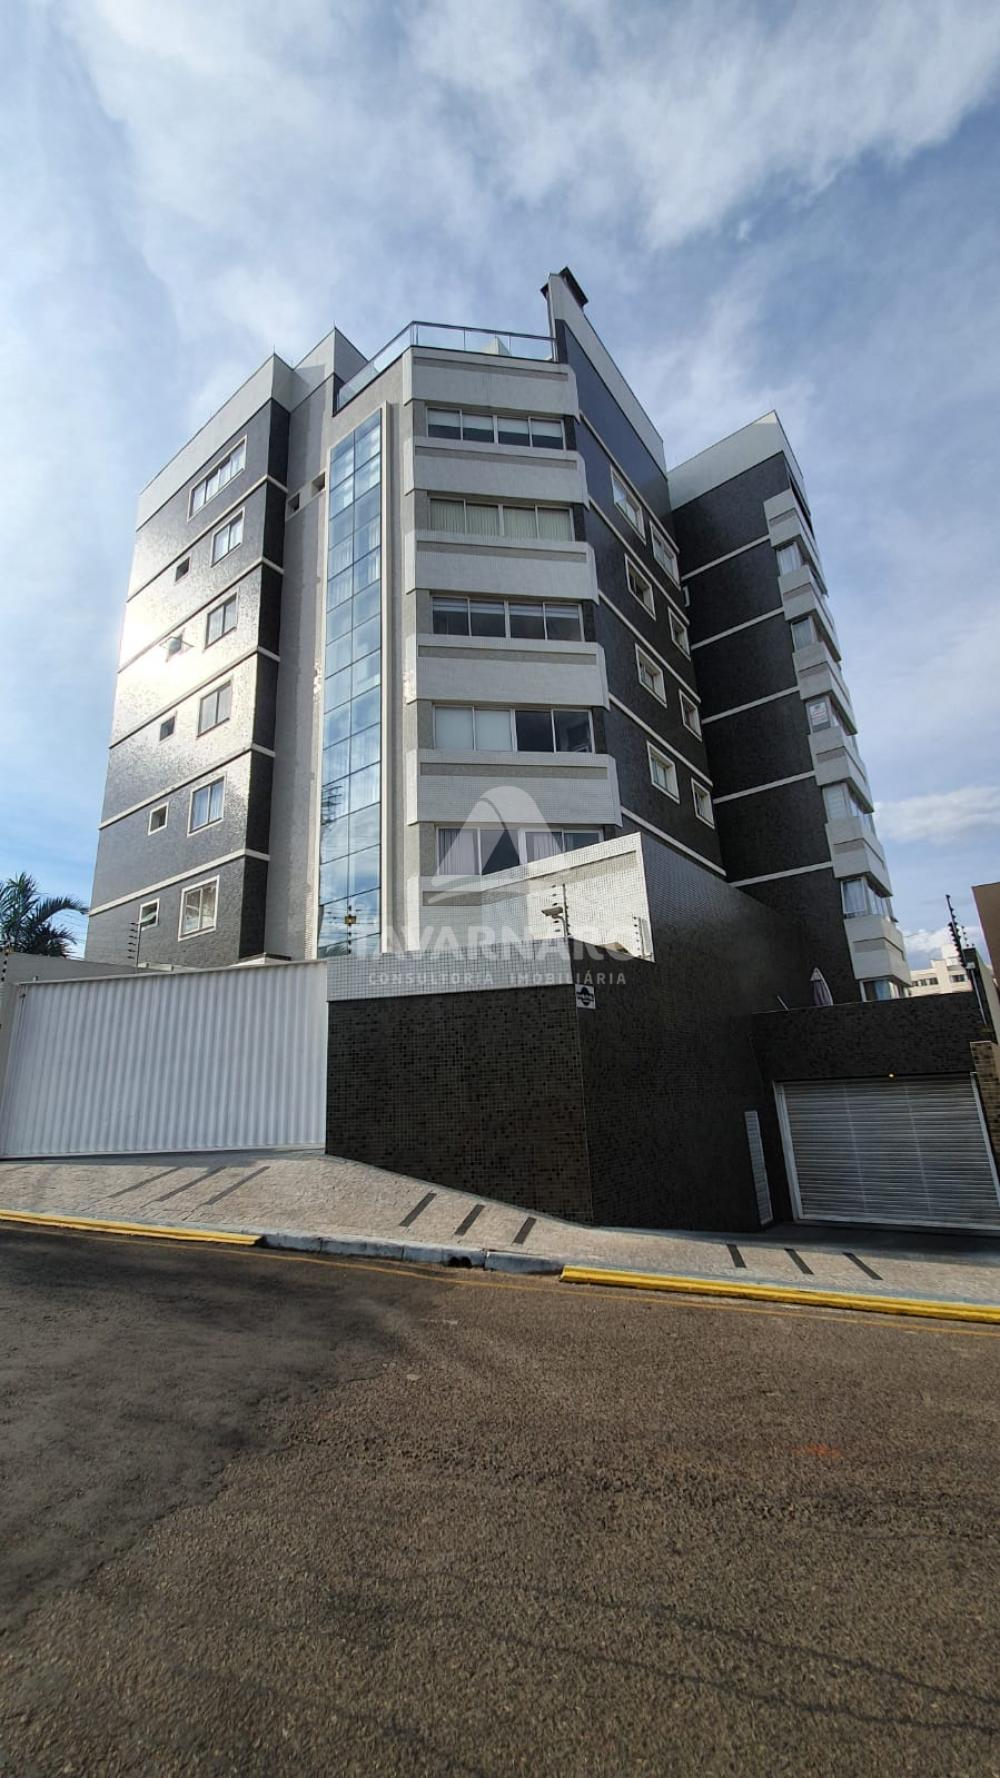 Comprar Apartamento / Padrão em Ponta Grossa R$ 580.000,00 - Foto 1